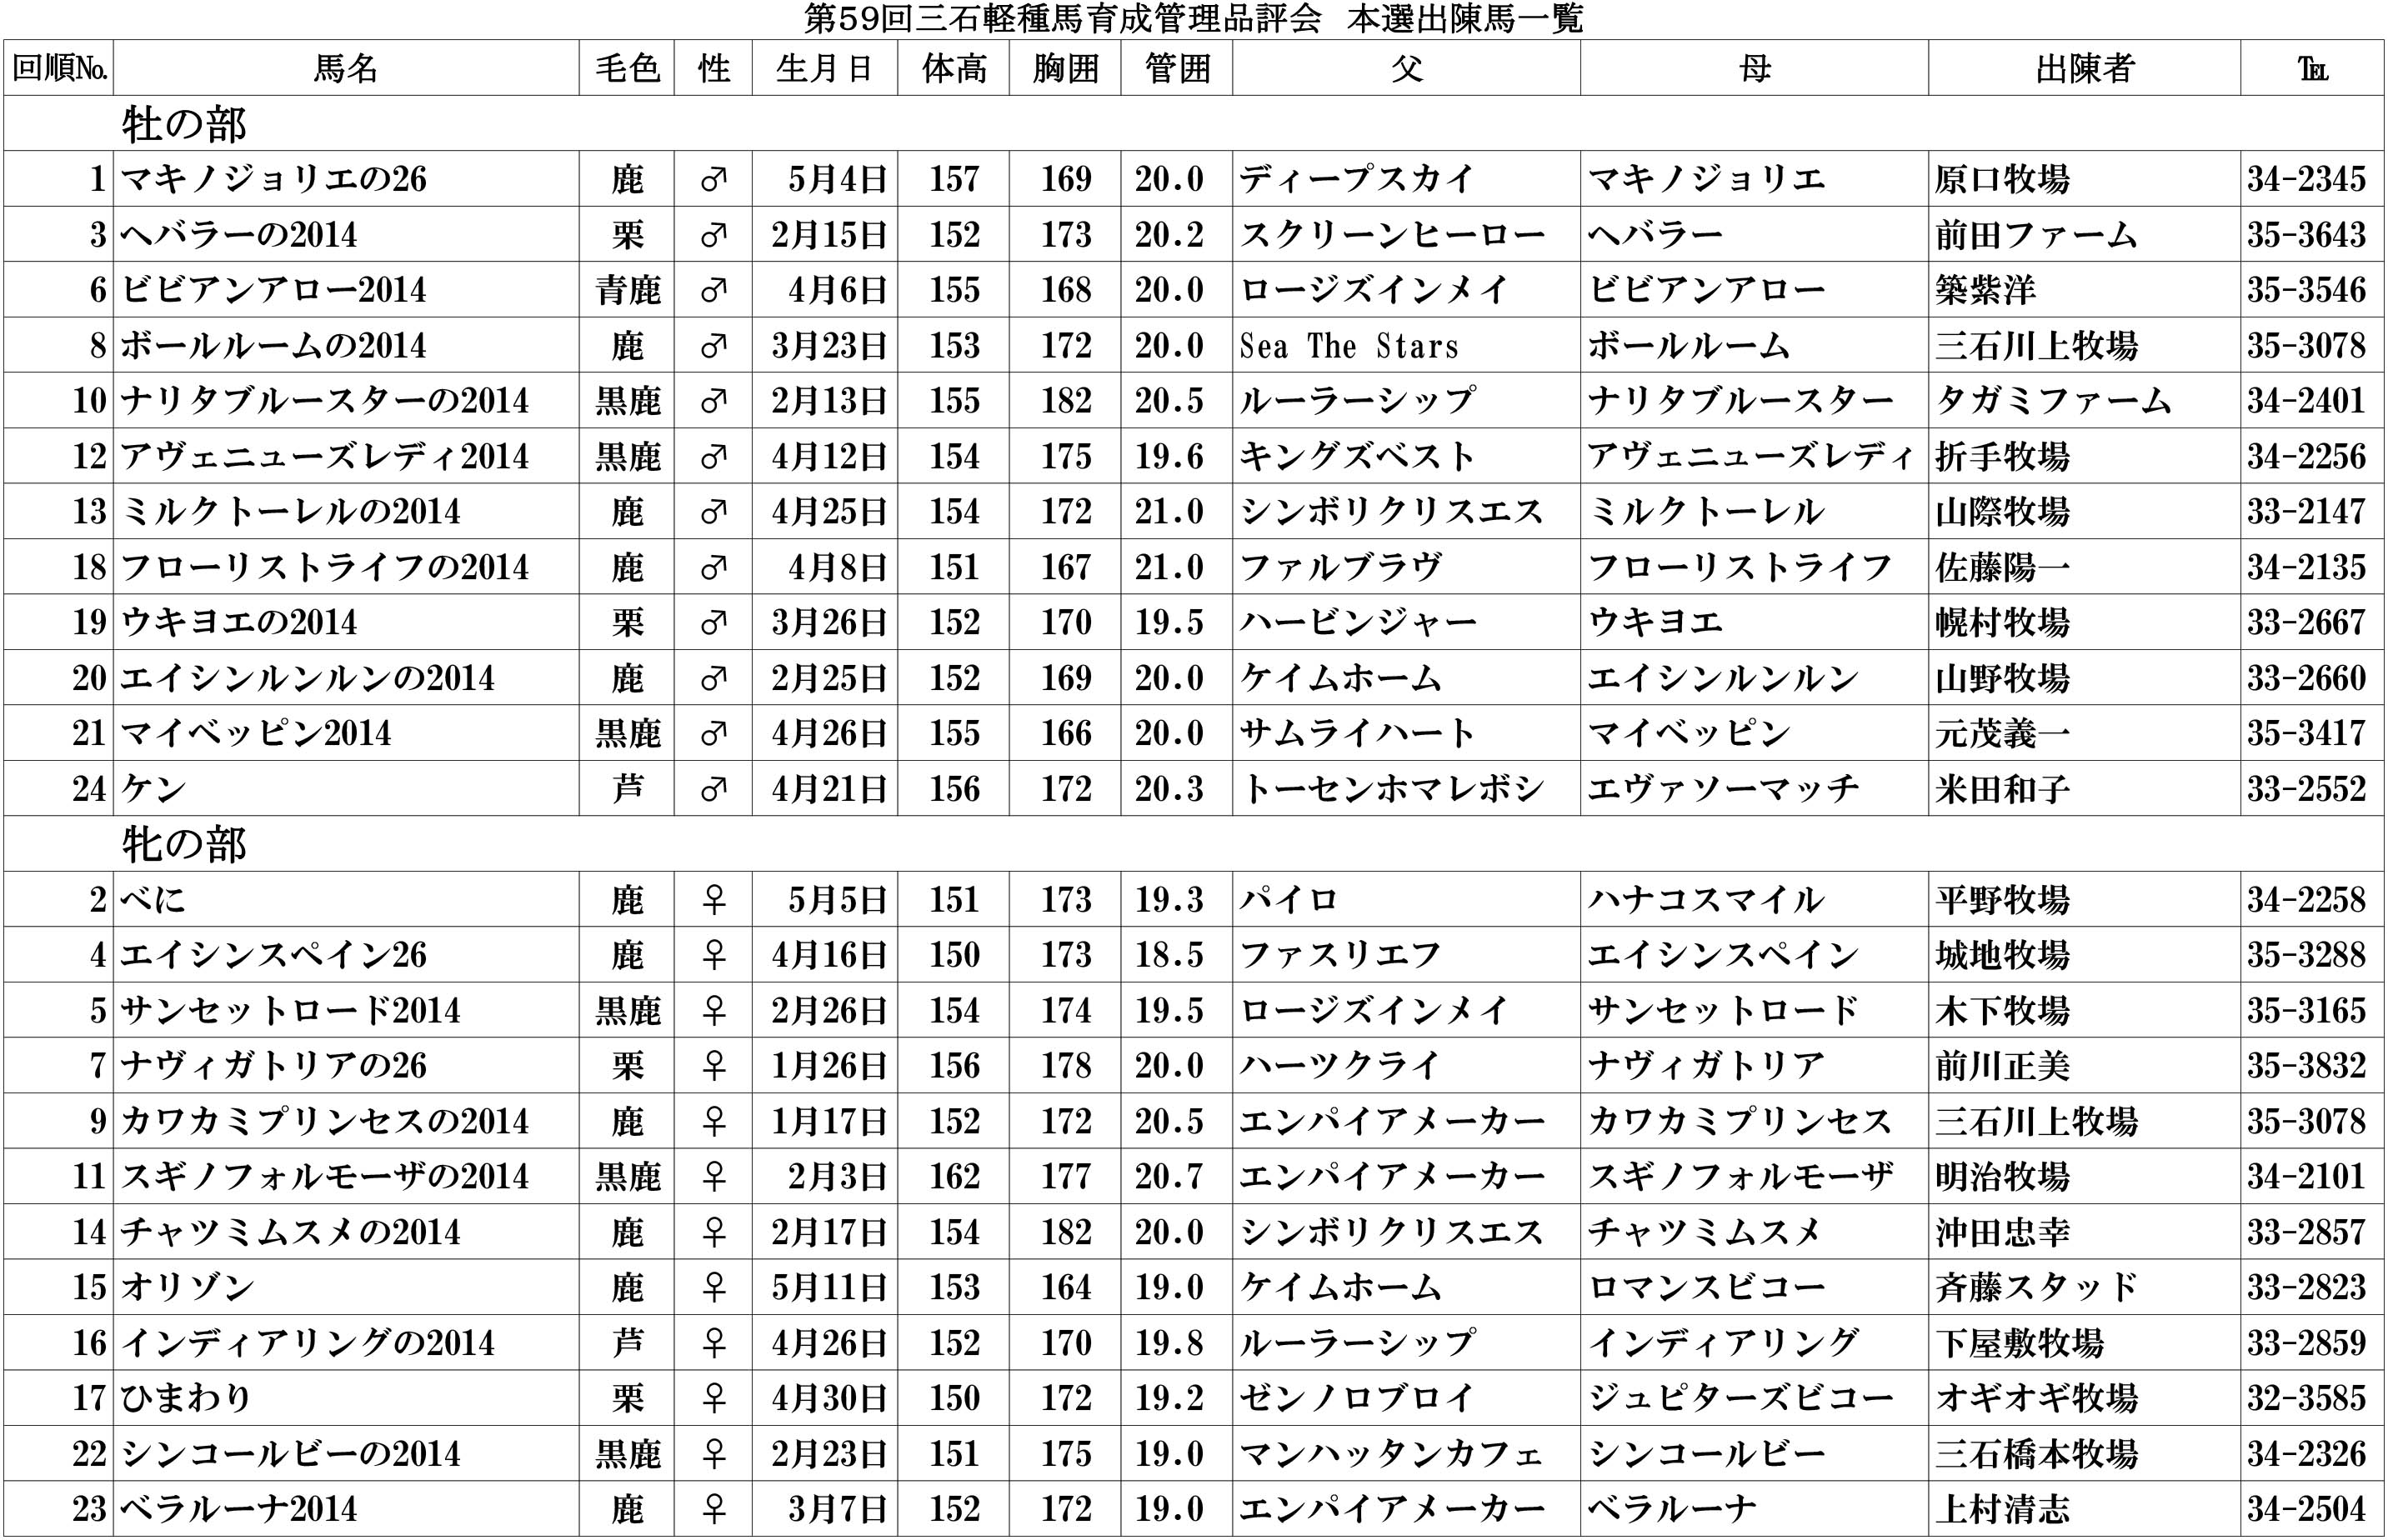 軽種馬育成管理品評会(H27)本選名簿